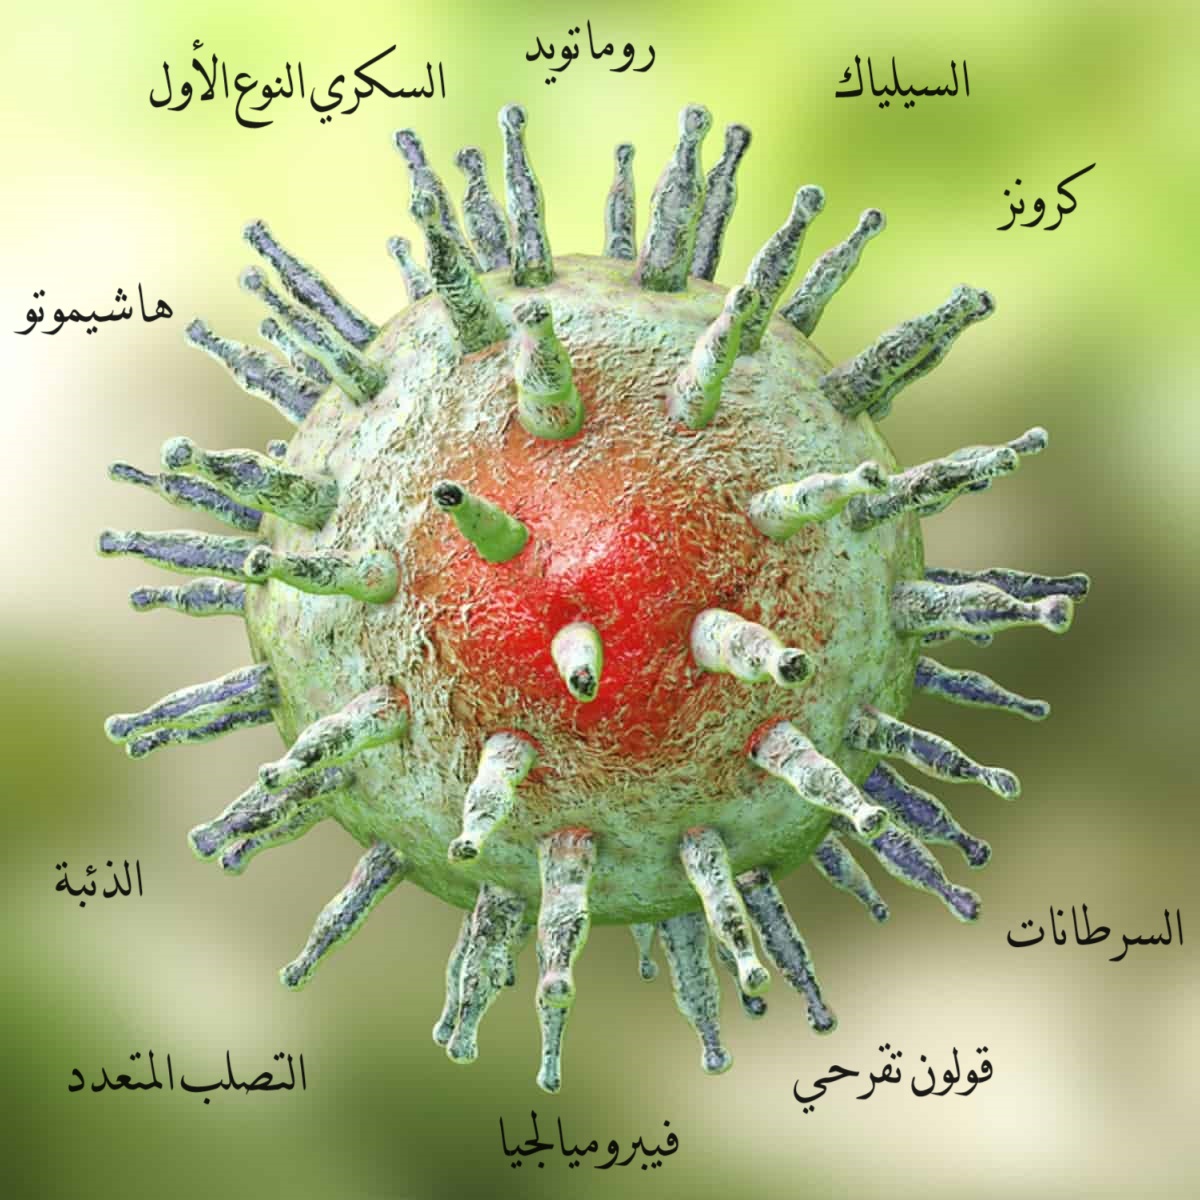 الأمراض التي يتسبب بها إبشتاين بار فيروس